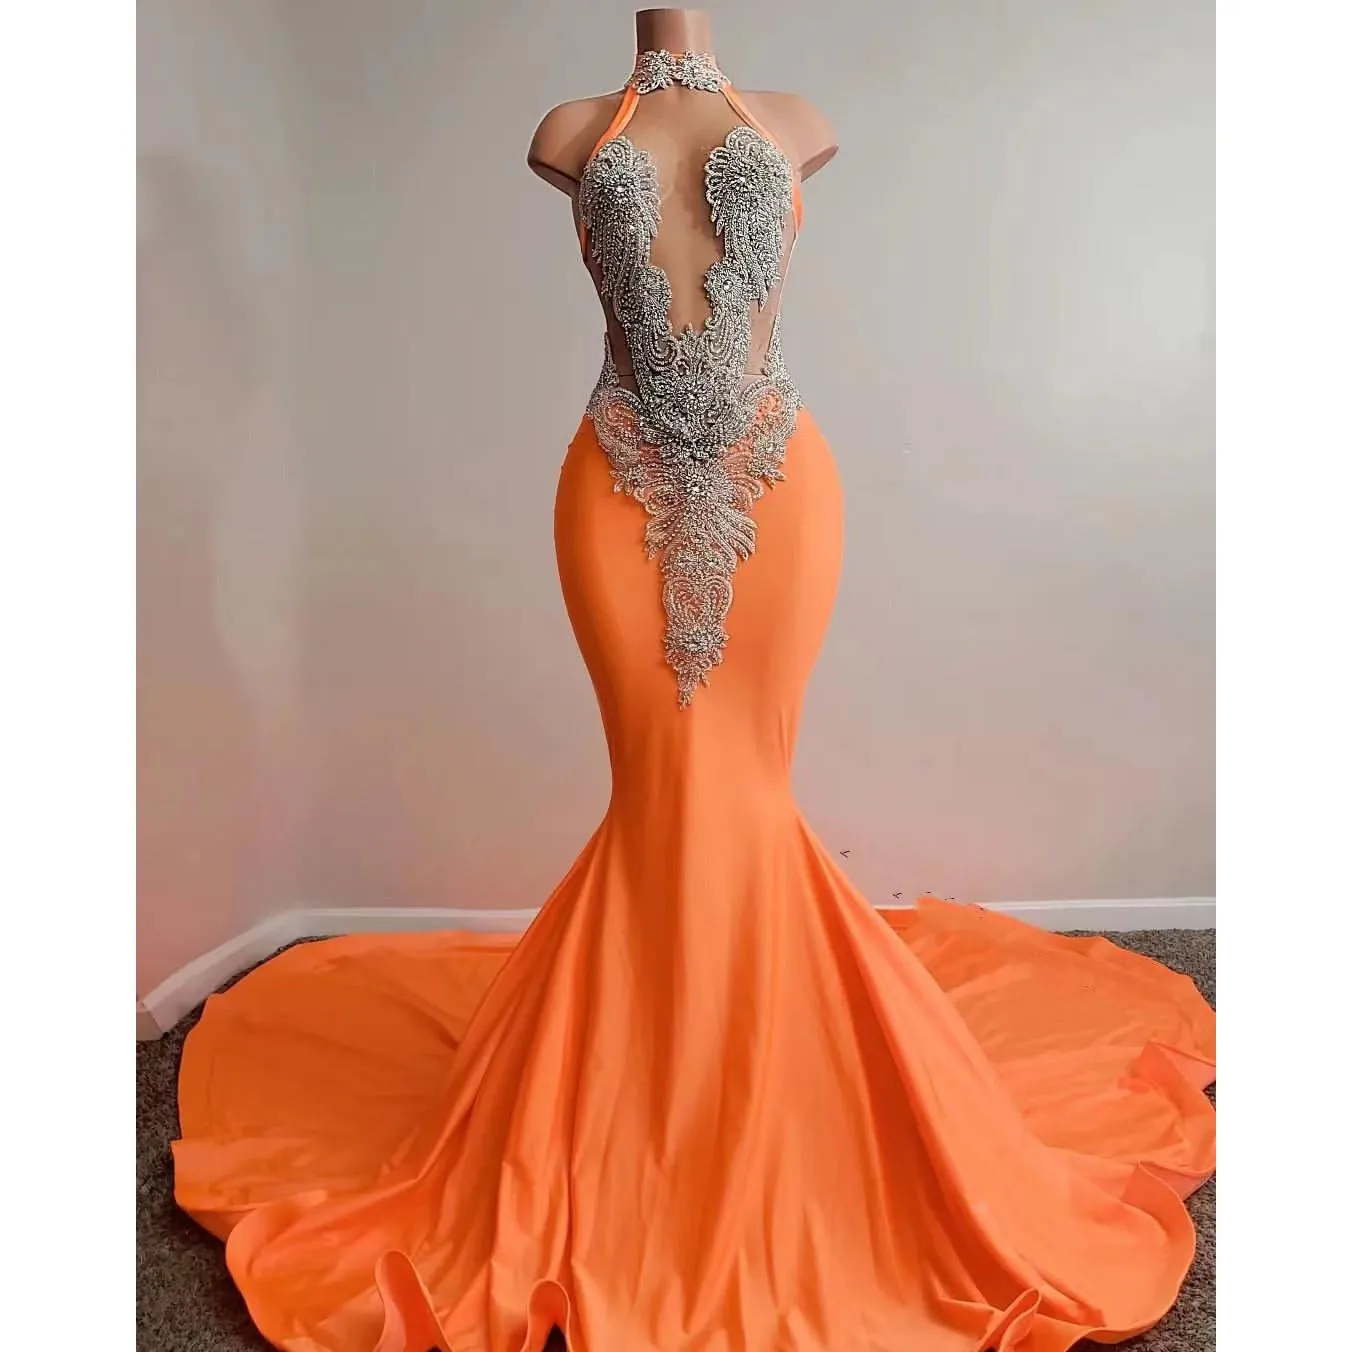 Seksowna sukienka pomarańczowa balowa dla afrykańskich kobiet satynowych frezowanie cekinowane wysokiej szyi bez rękawów czerwony dywan długimi syrenkami suknie wieczorowe